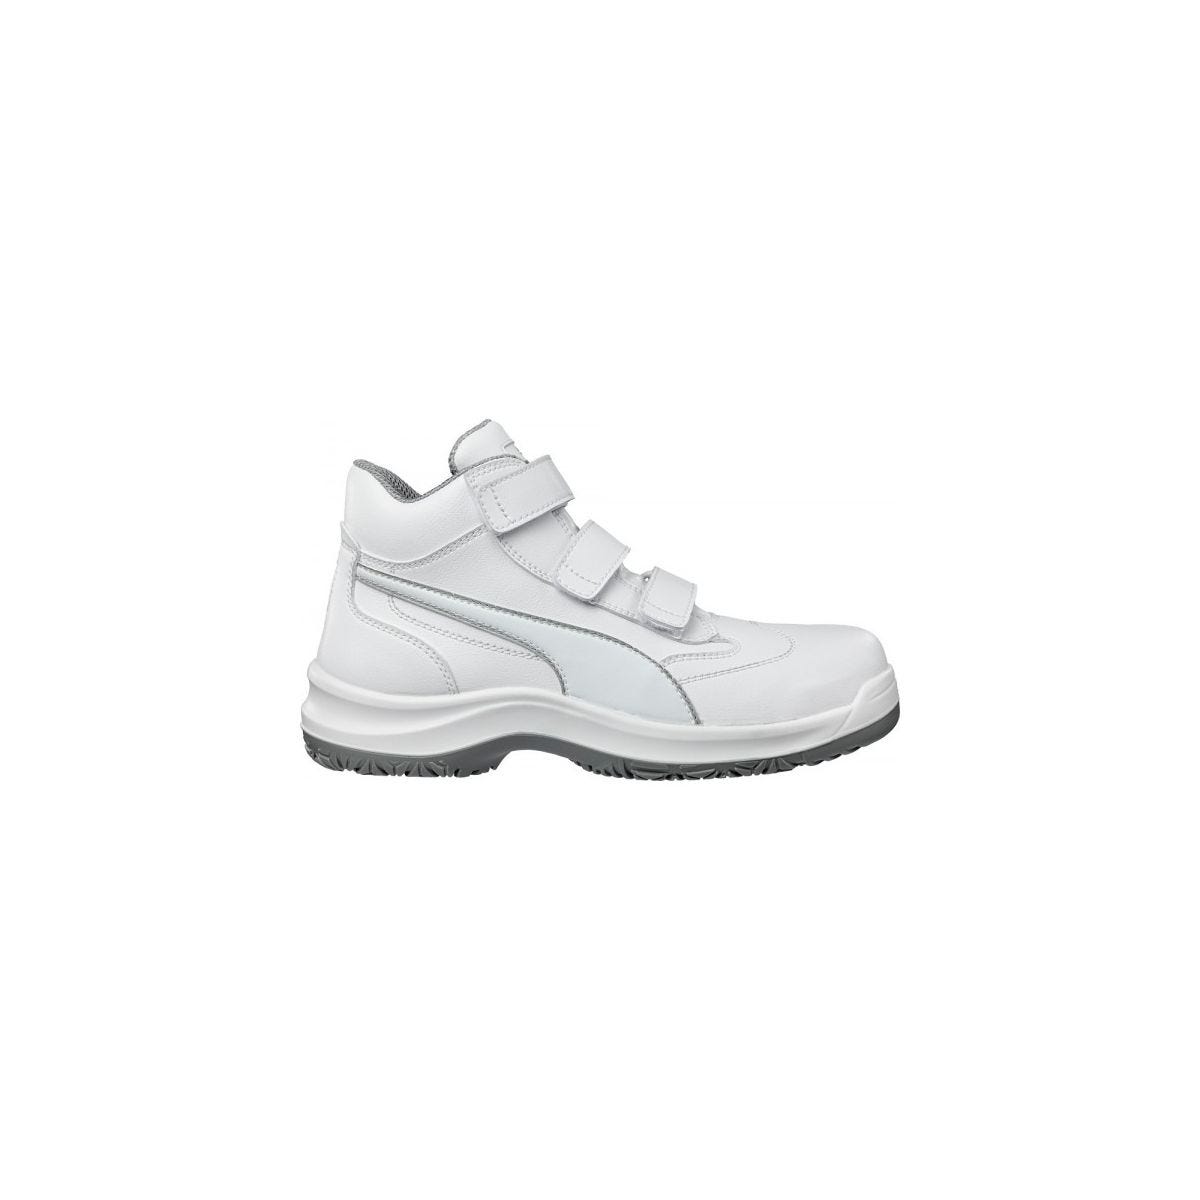 Chaussures de sécurité Absolute Mid S2 Blanc - Puma - Taille 47 0